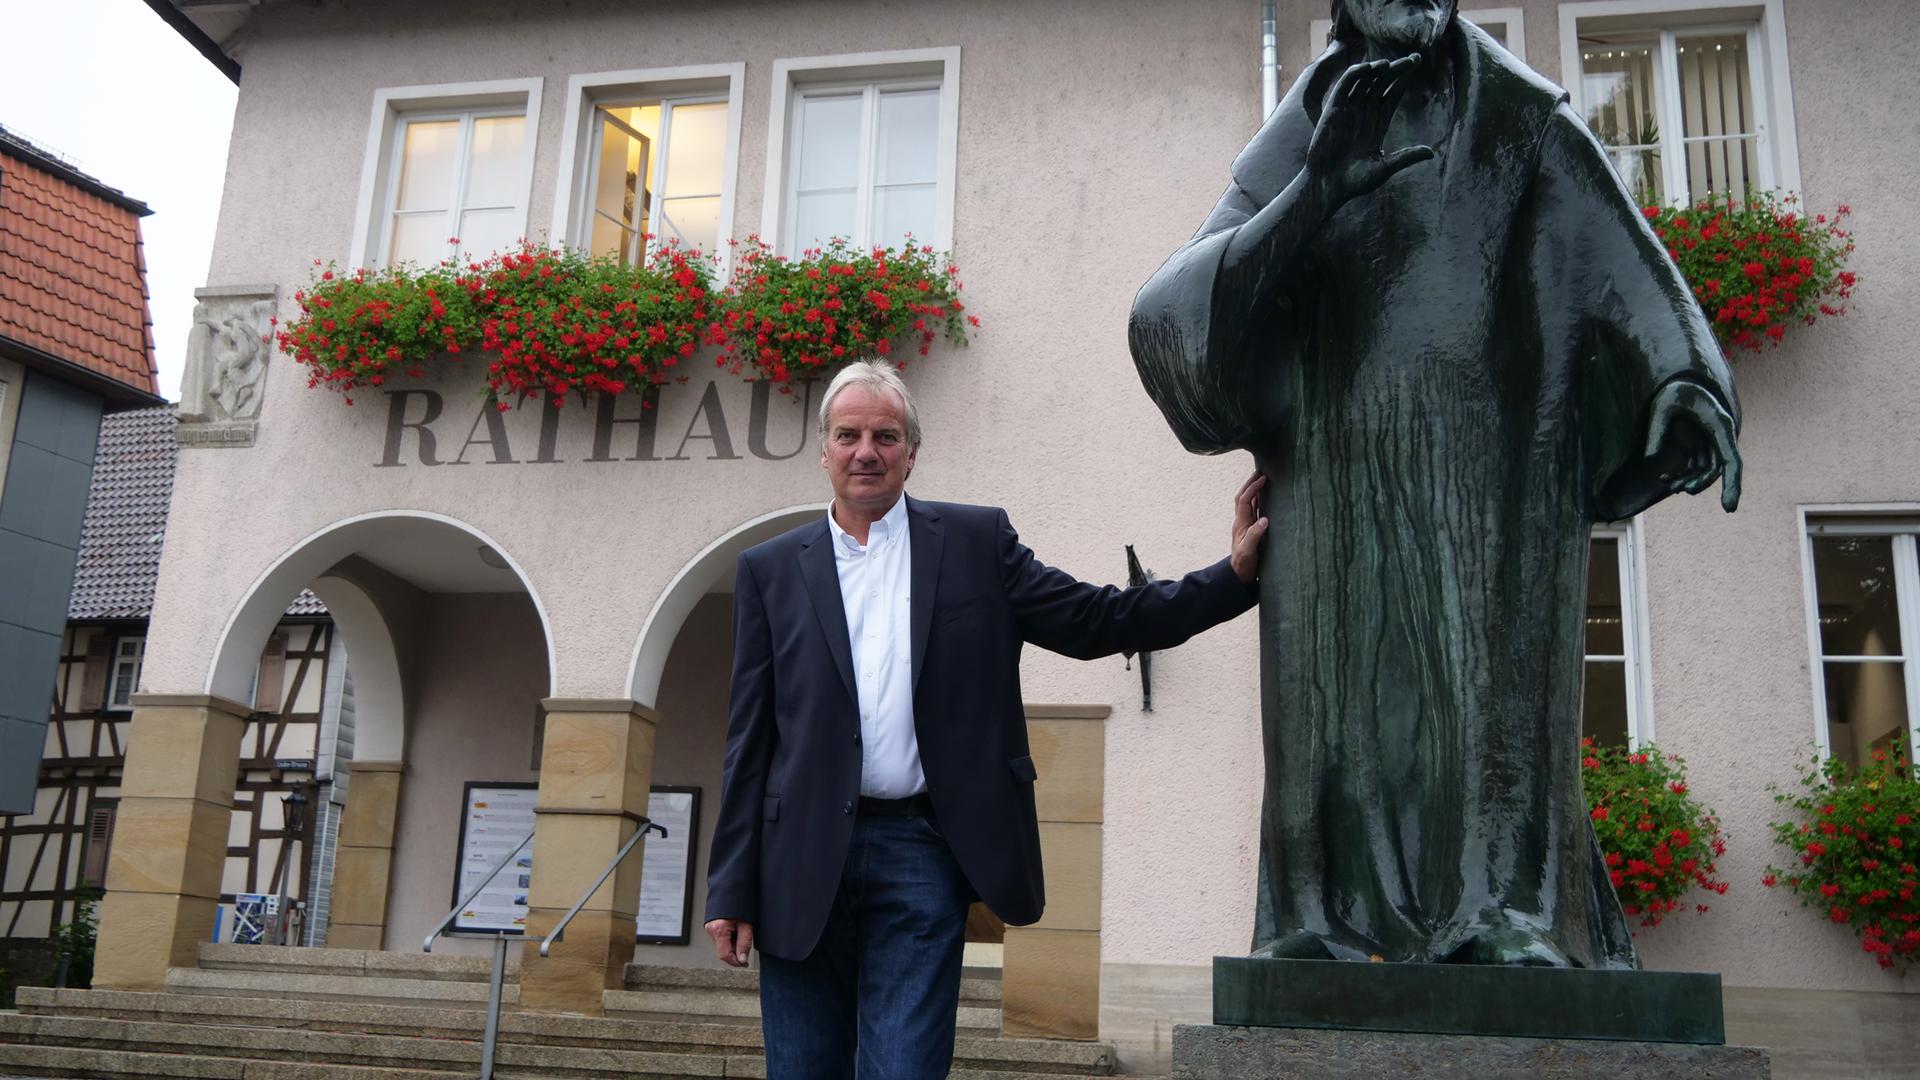 Eines ist sicher: Das Rathaus in der Fauststadt Knittlingen wird nach der Wahl einen neuen Verwaltungschef haben. Der amtierende Bürgermeister Heinz-Peter Hopp tritt nicht wieder an.